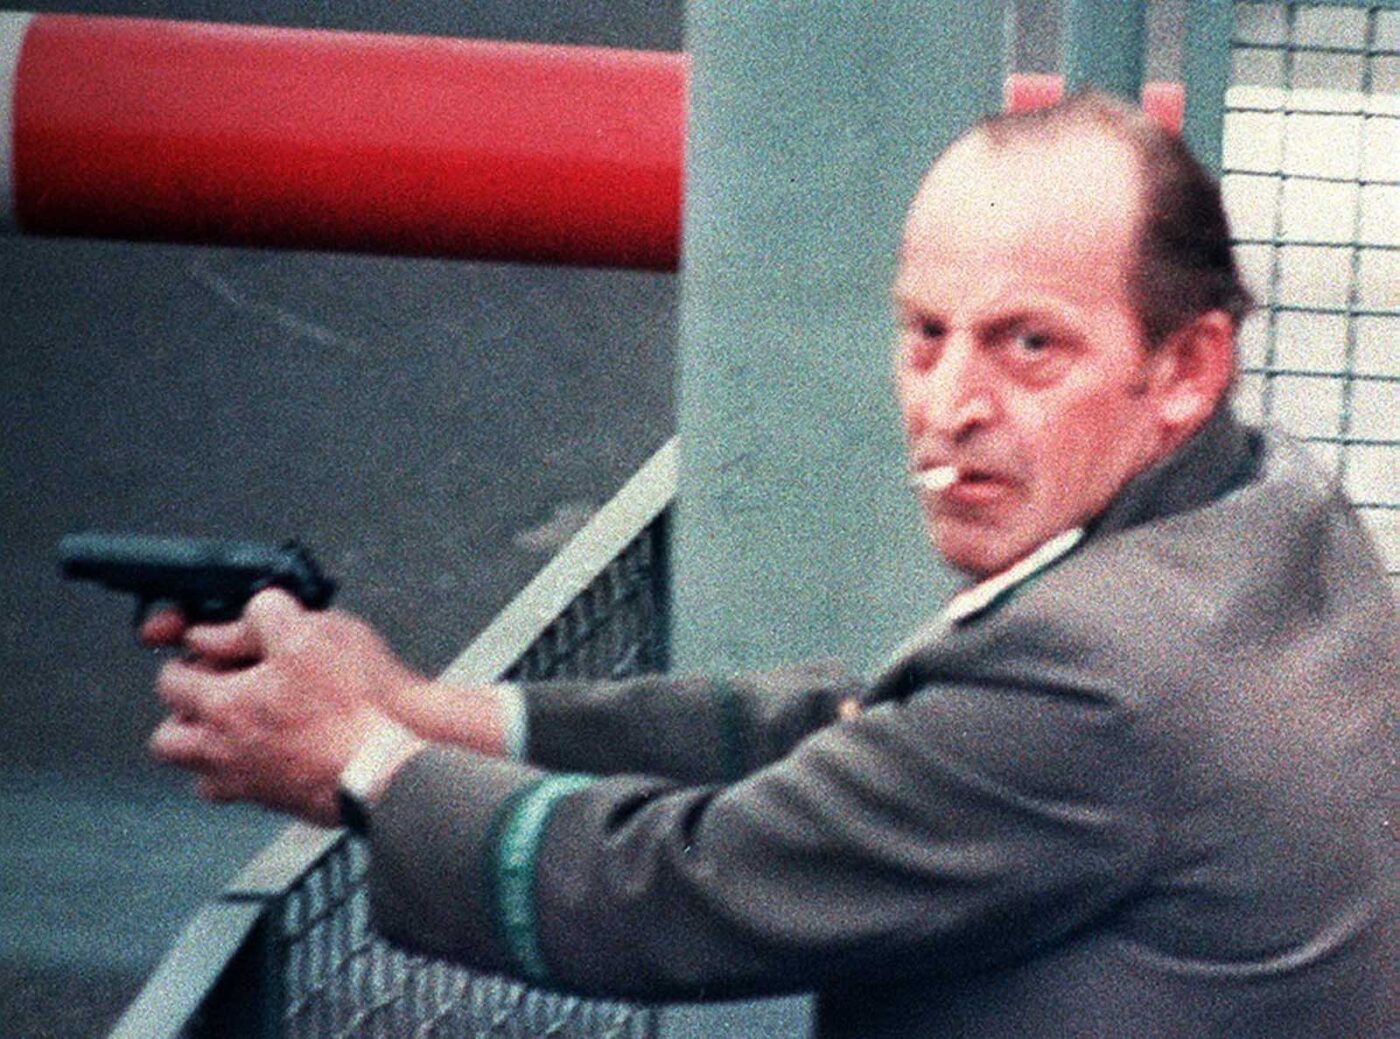 Cigarette butt man at Berlin Wall with Makarov pistol